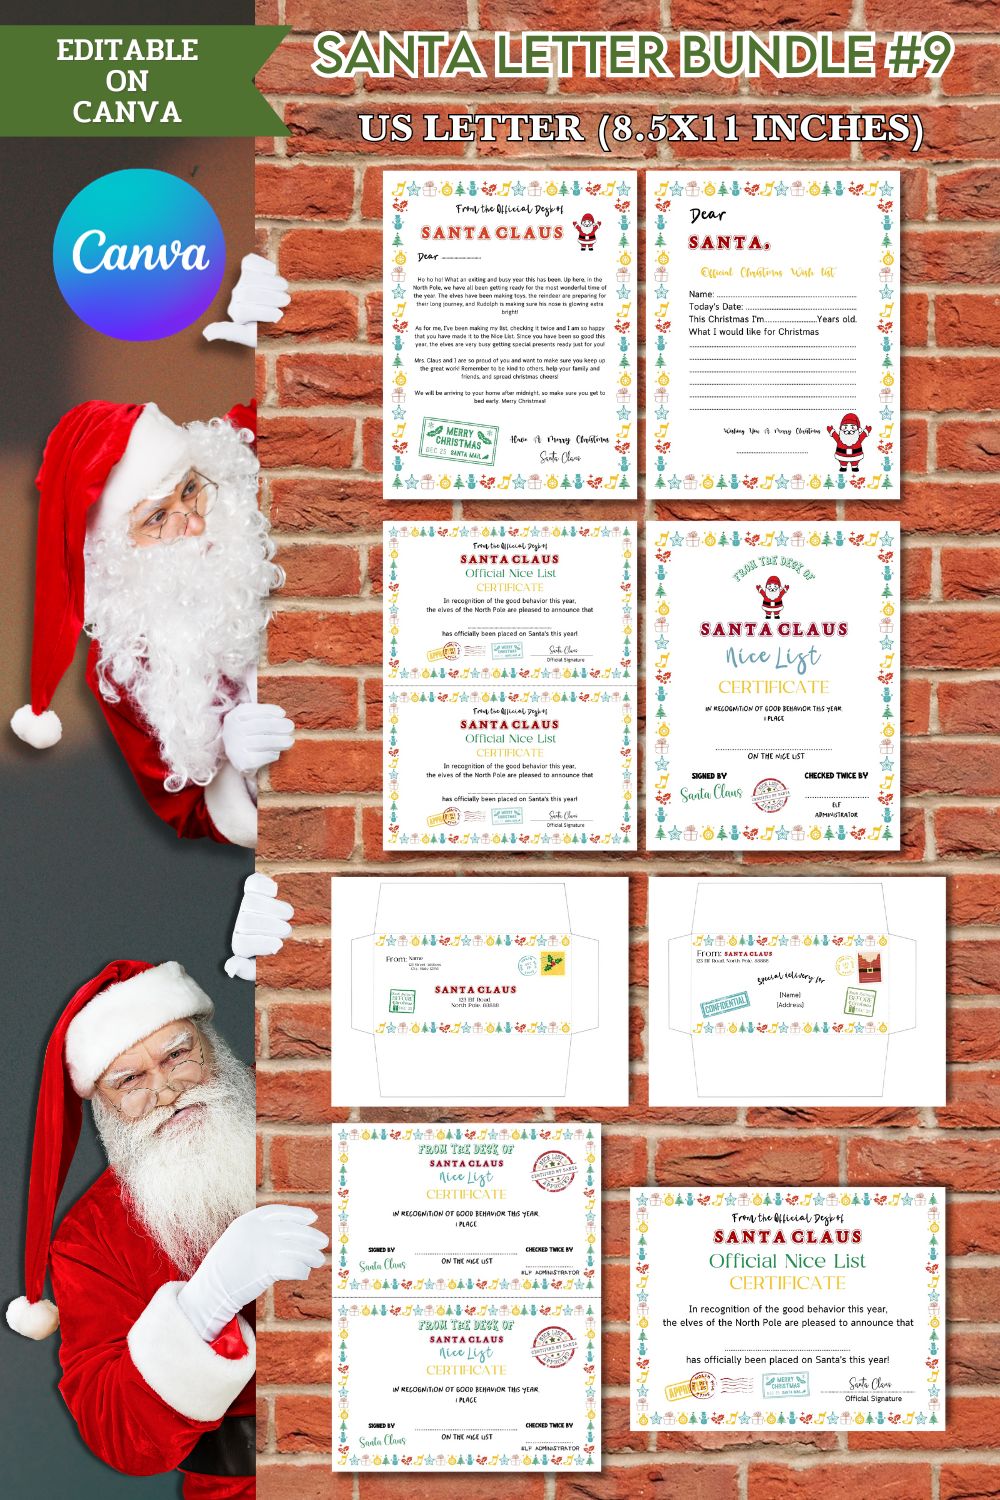 Santa Letter Bundle #9 pinterest preview image.